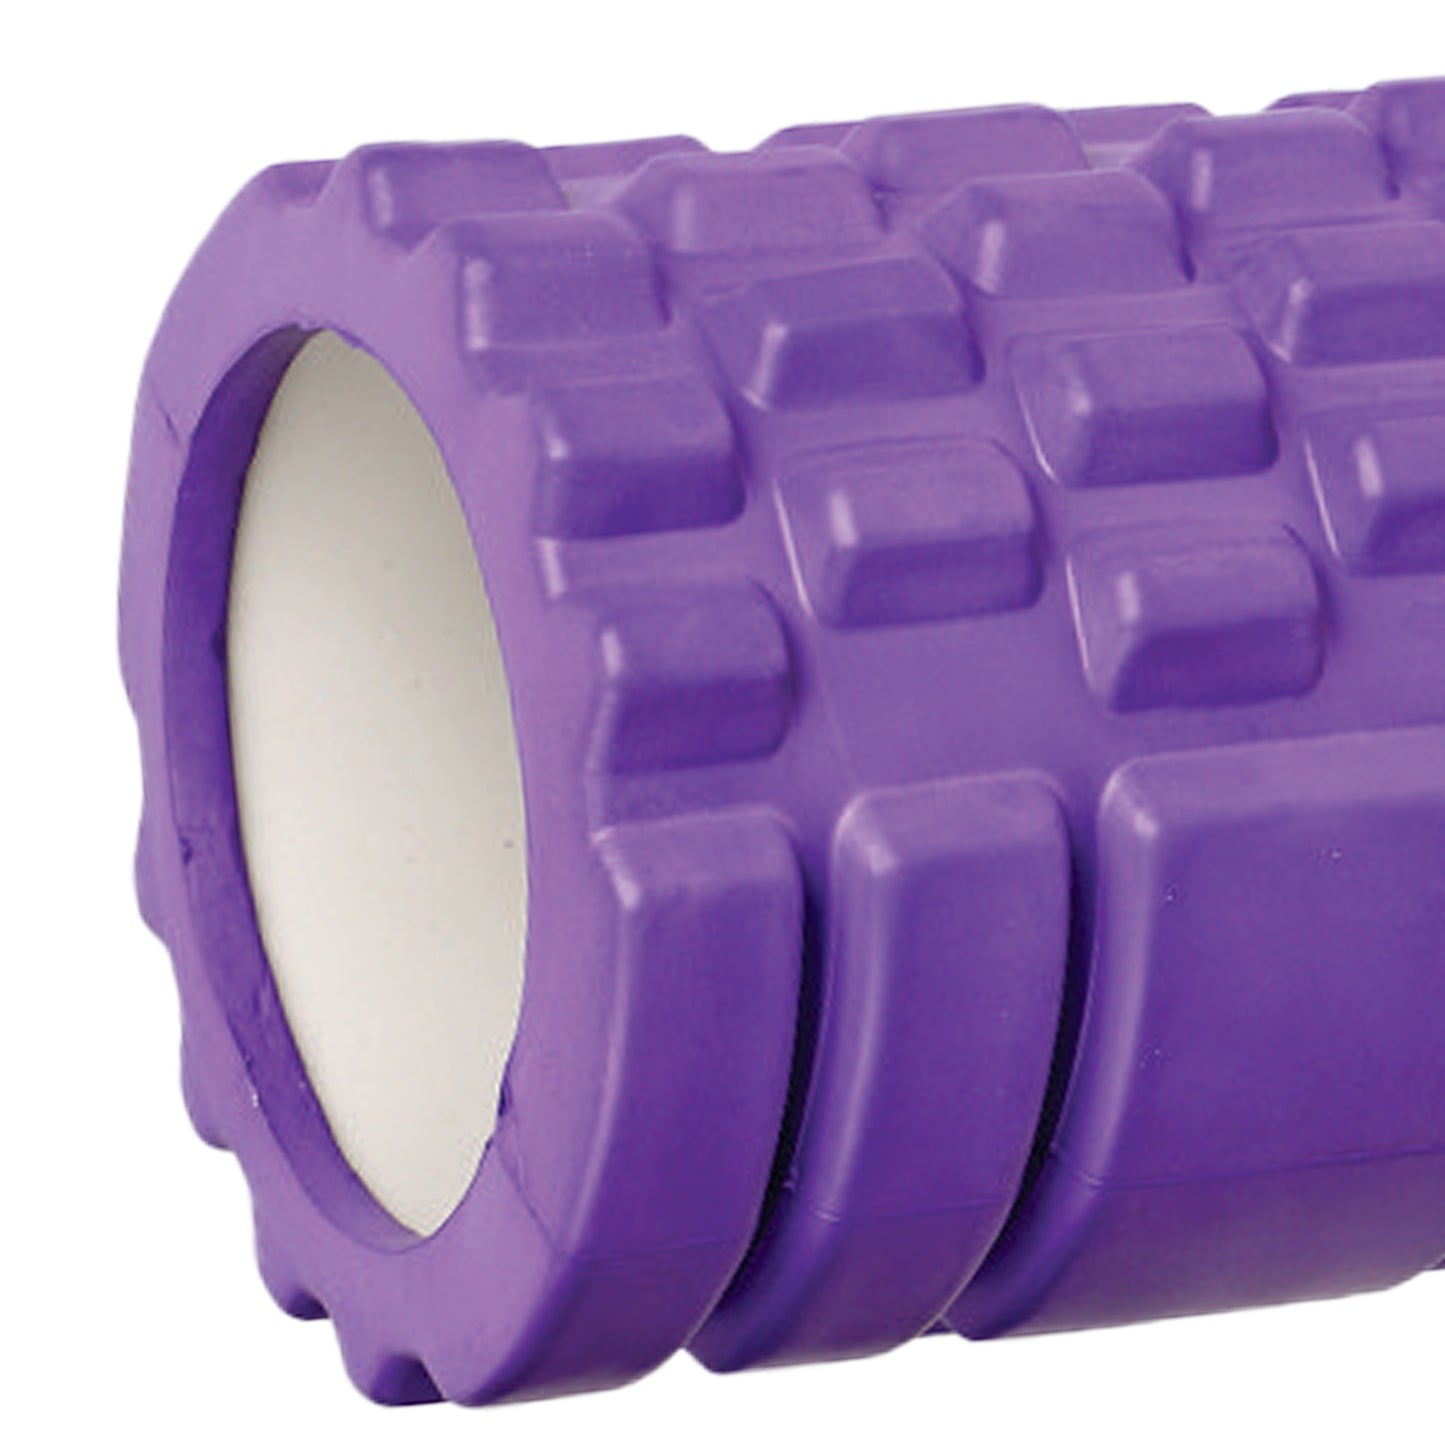 Yoga-Foam-roller-Plain-images-purple